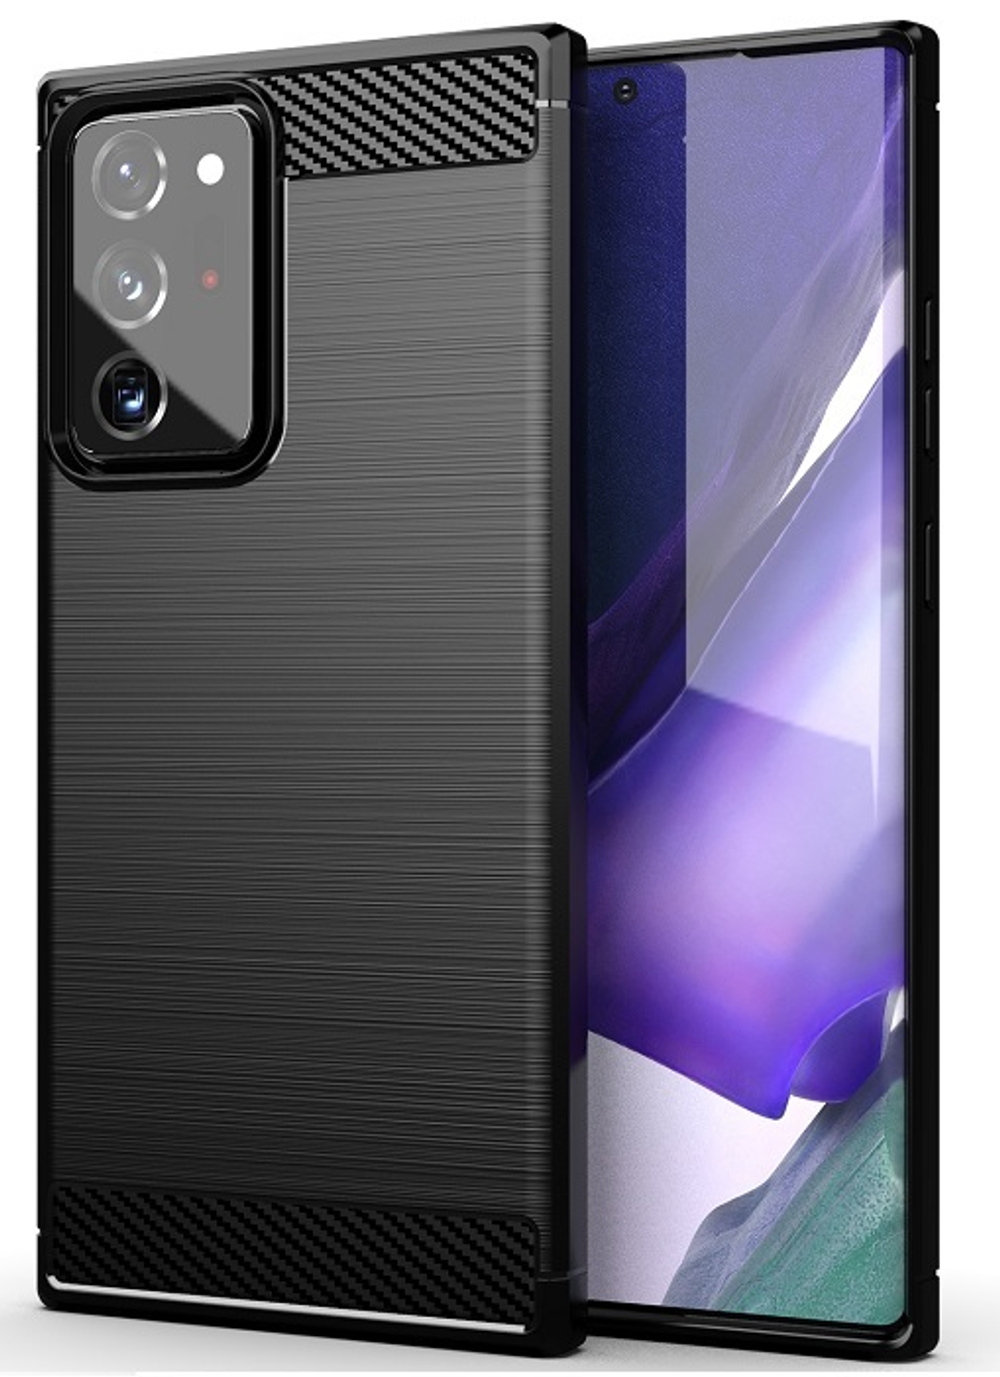 Чехол черного цвета в стиле под карбон на Samsung Galaxy Note 20 Ultra, серия Carbon от Caseport